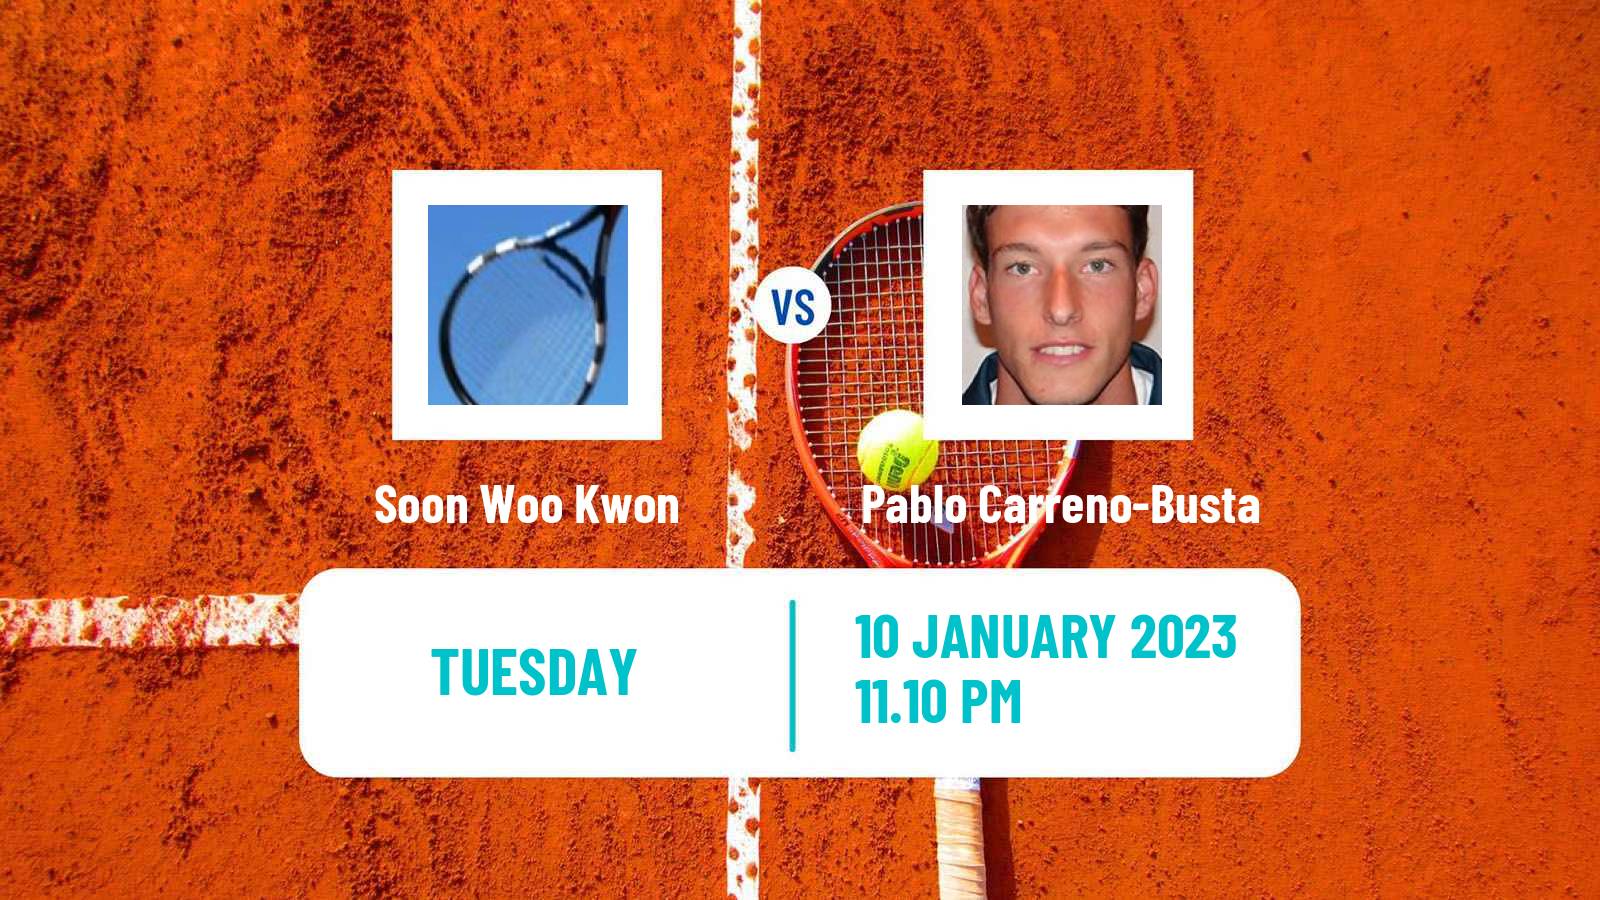 Tennis ATP Adelaide 2 Soon Woo Kwon - Pablo Carreno-Busta